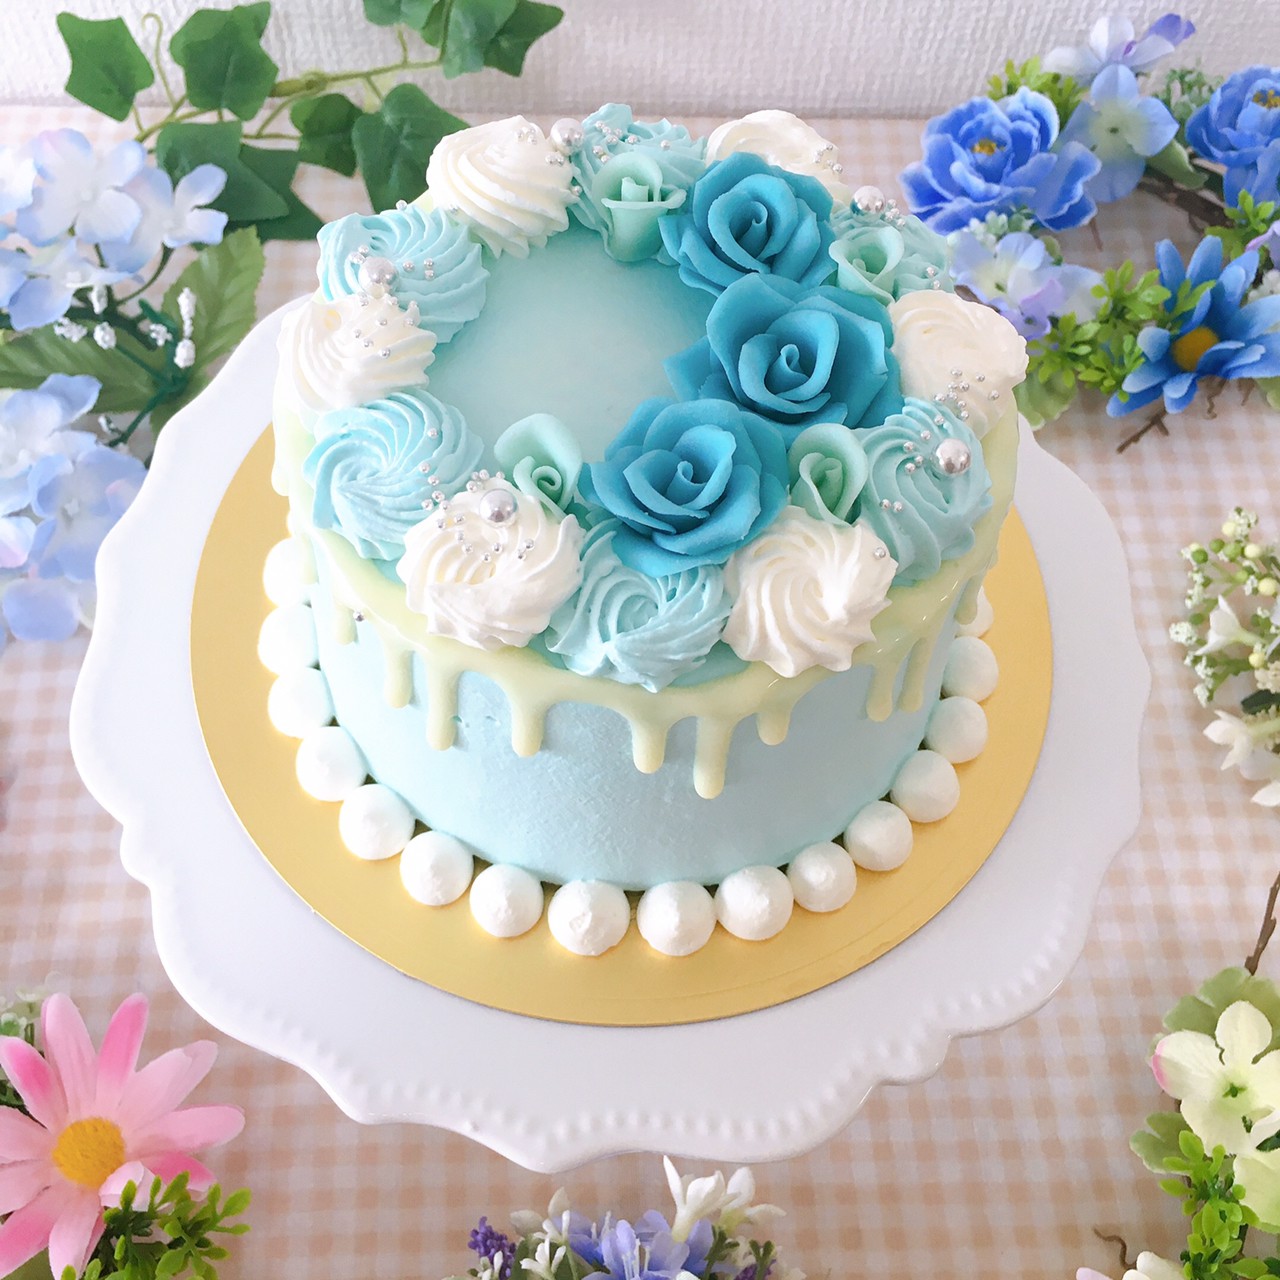 Lafleur Order Cake 世界に一つだけのケーキでお客様の心に幸せの花を届けます